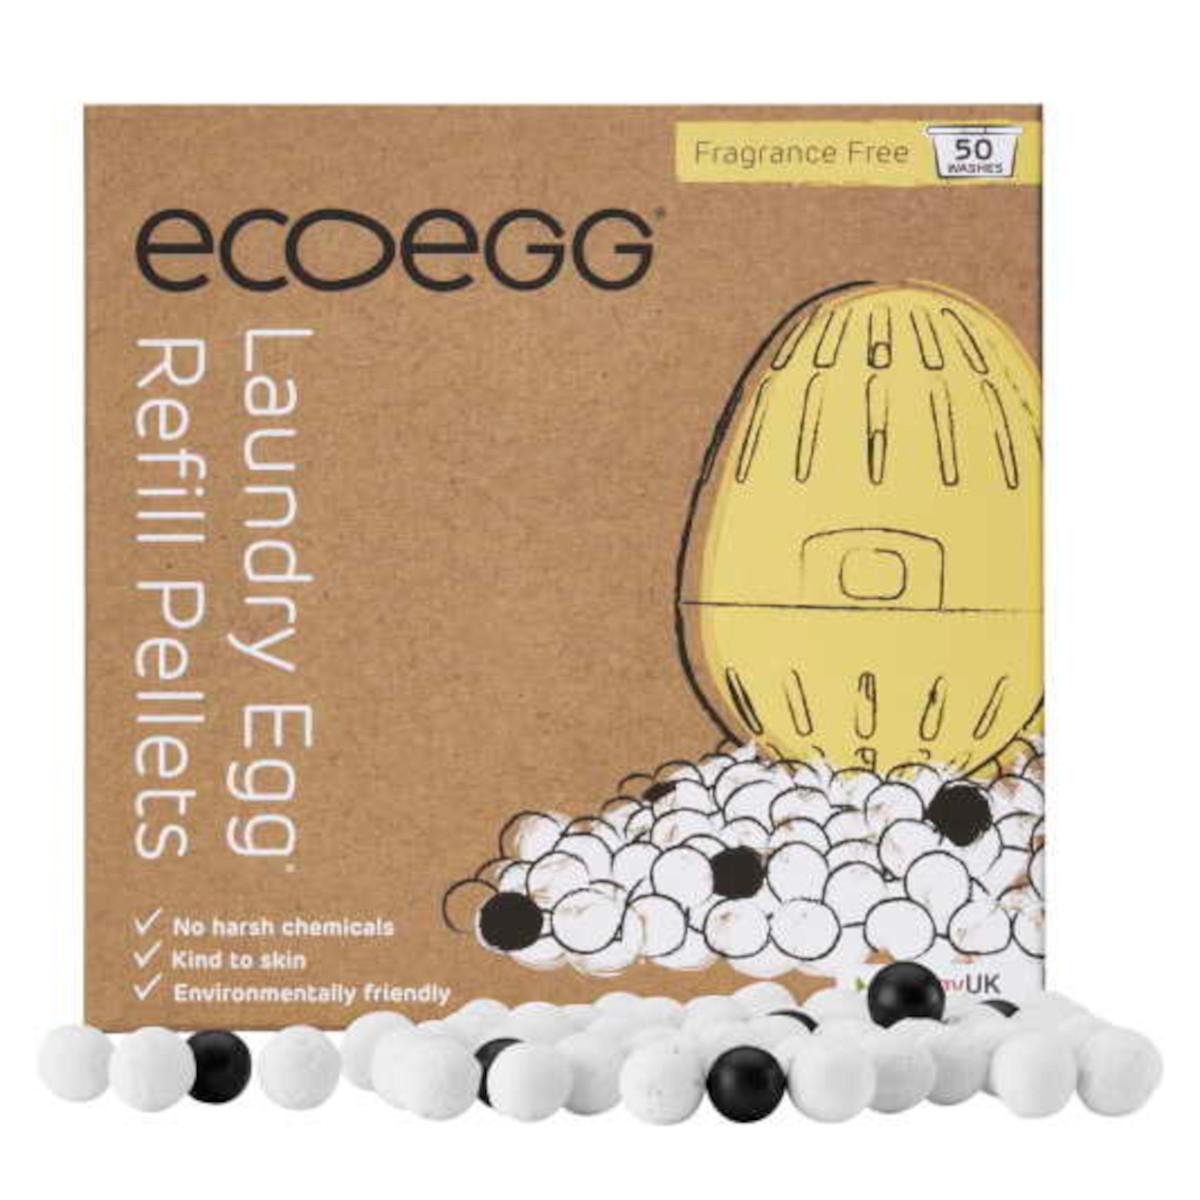 Ecoegg Náplň do vajíčka na praní 50 praní, bez vůně